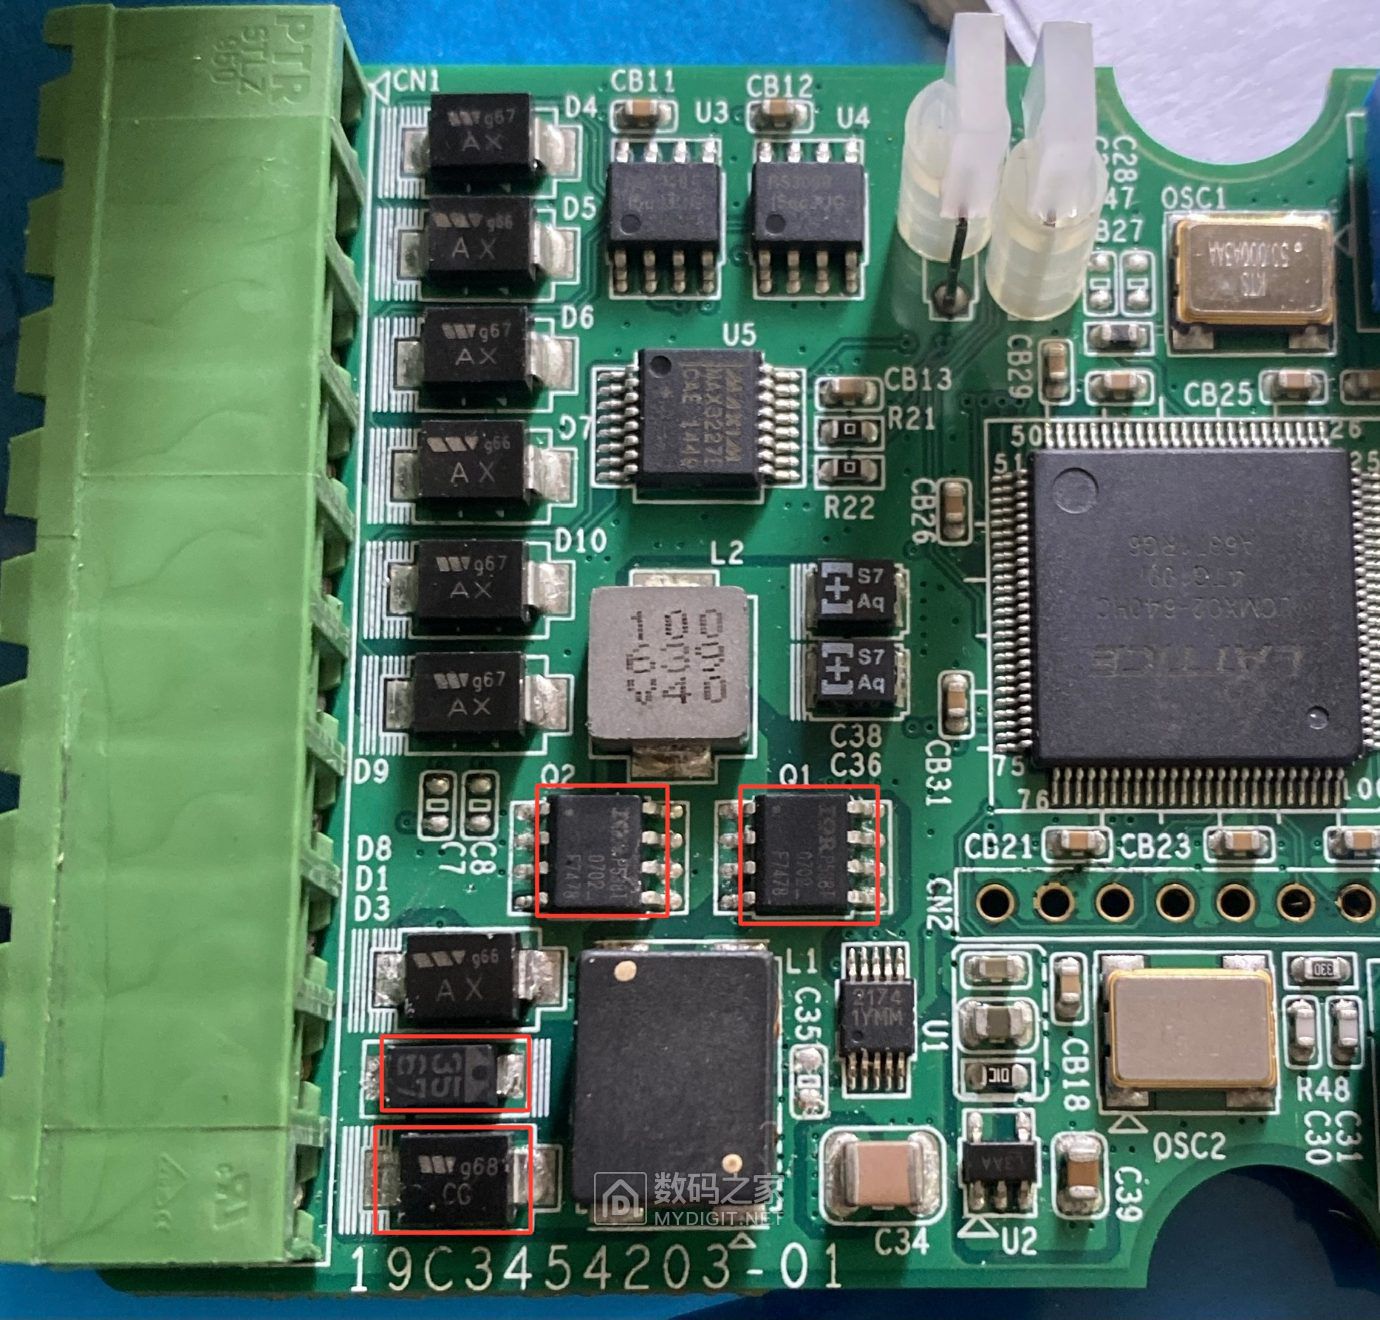 Q2电源芯片 P538T损坏  TVS -AX损坏